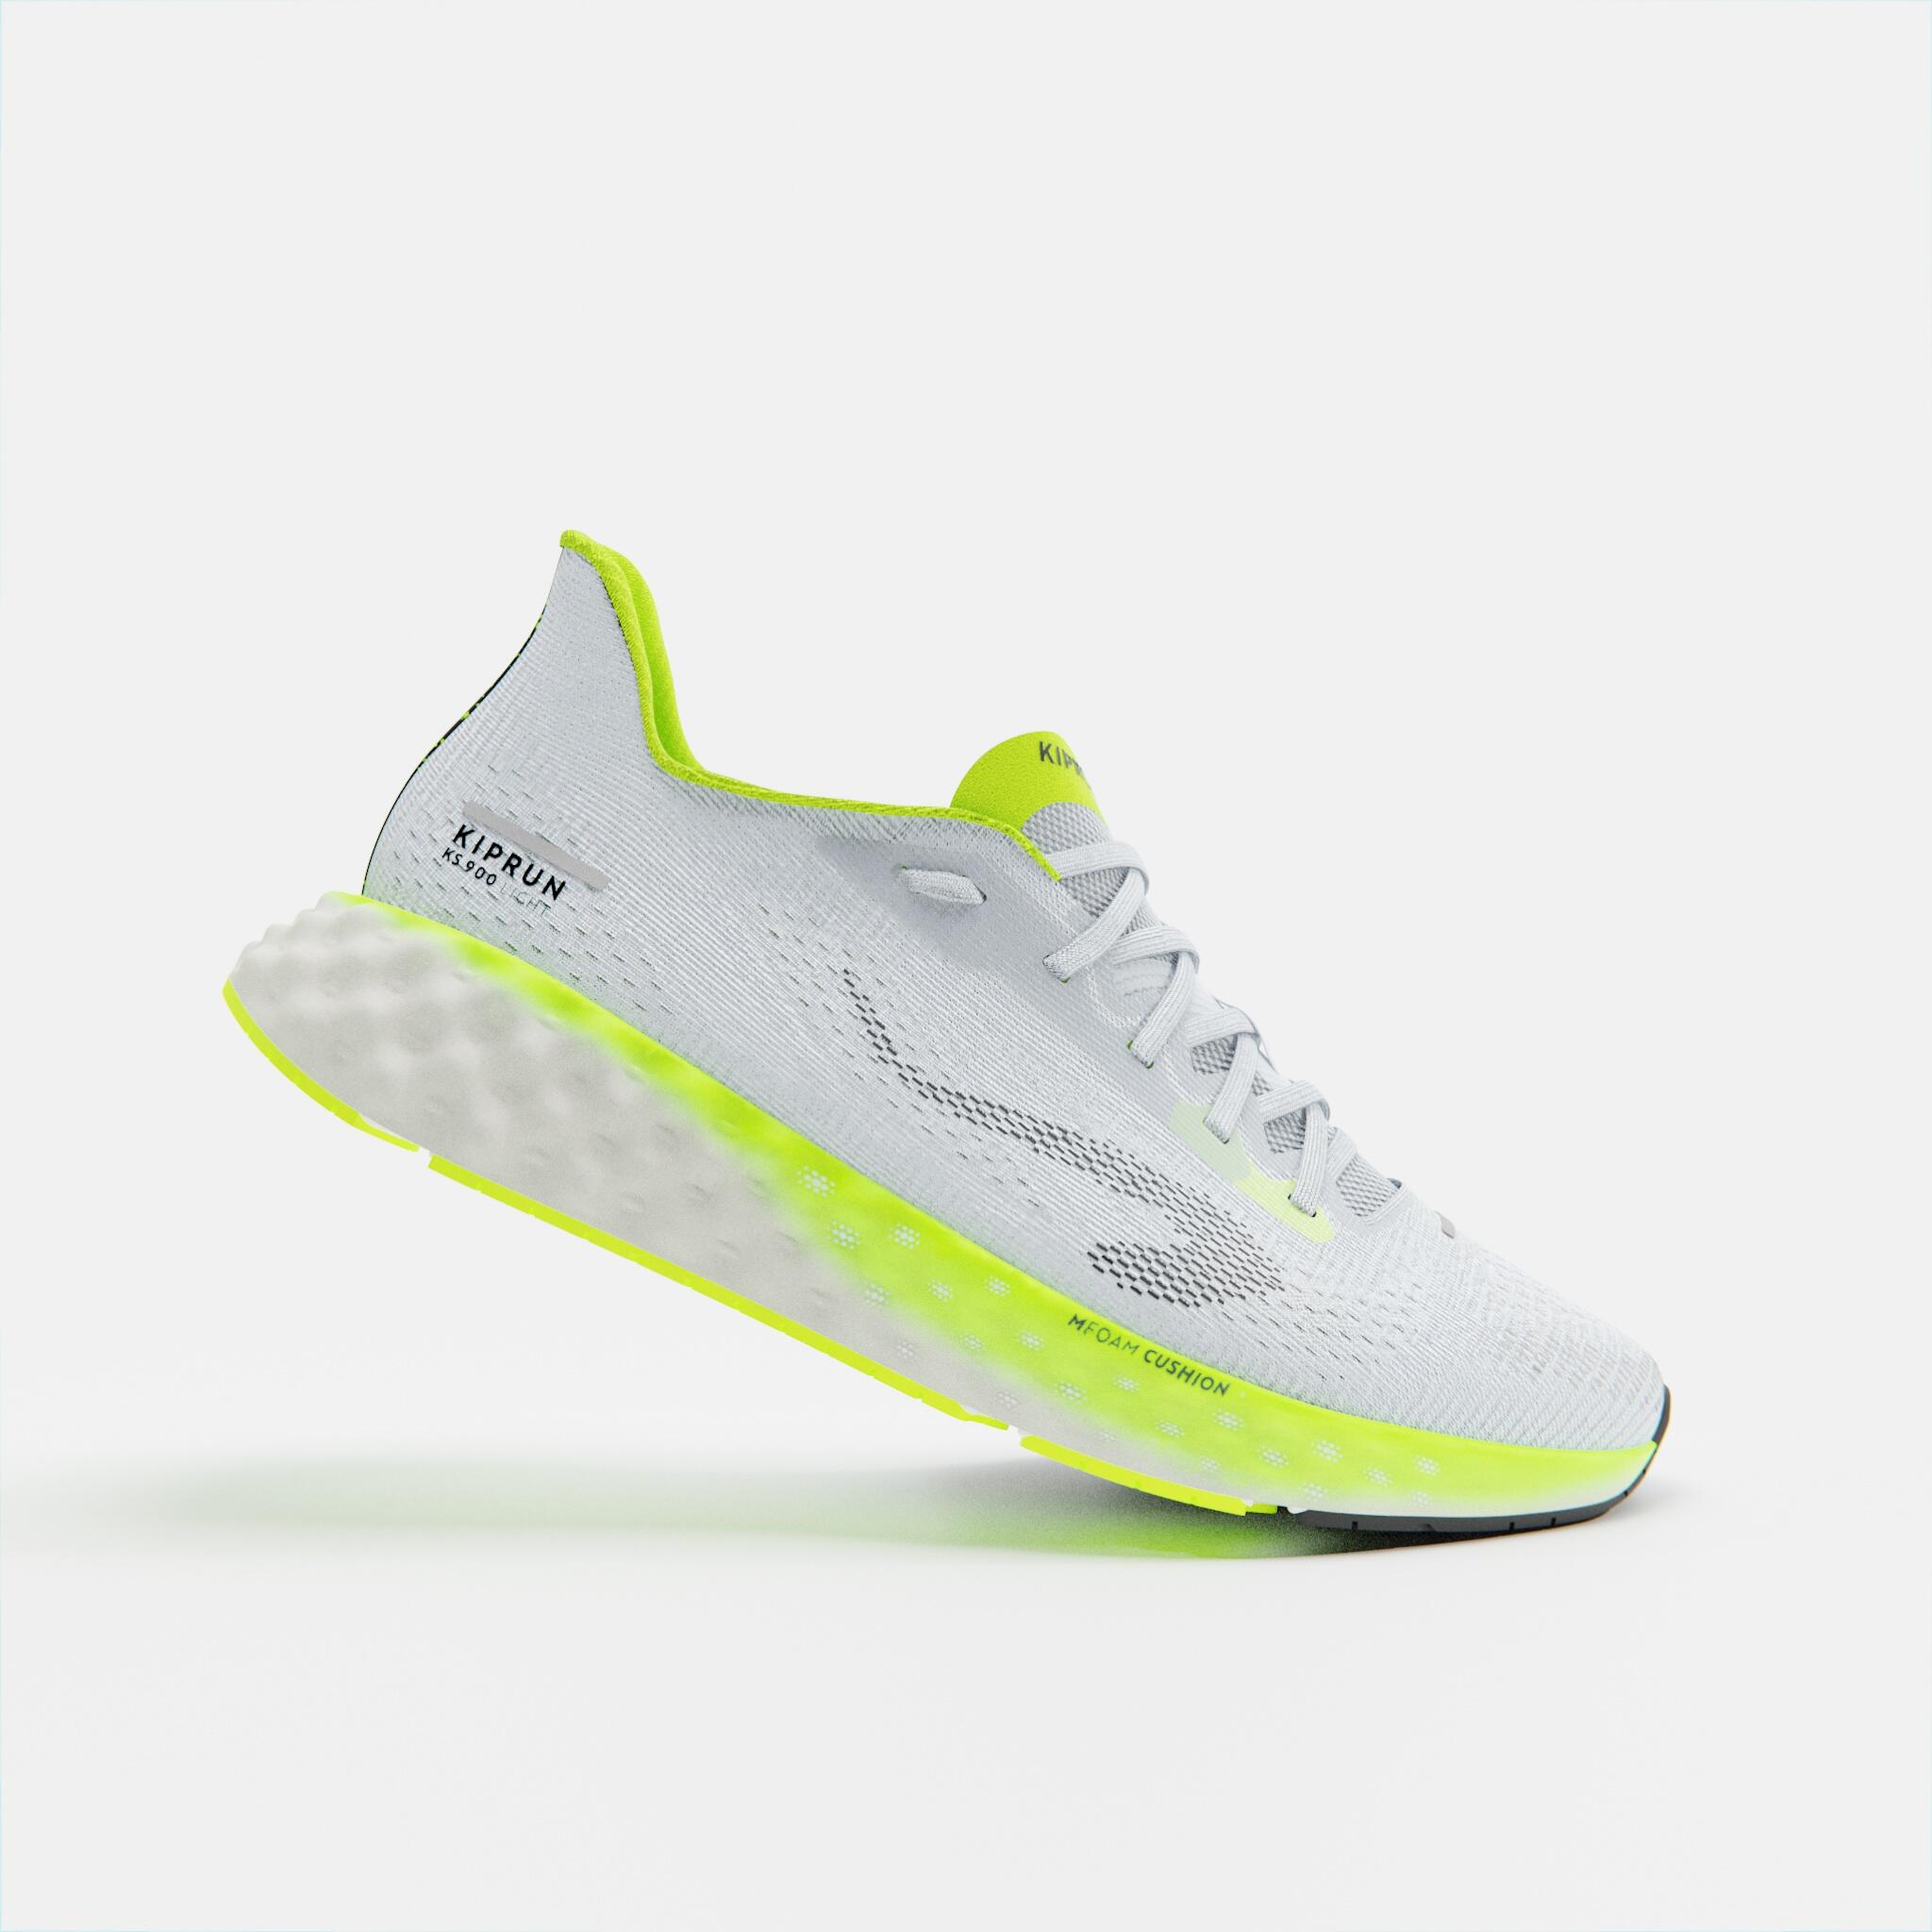 Men's Light Running Shoes - KS 900